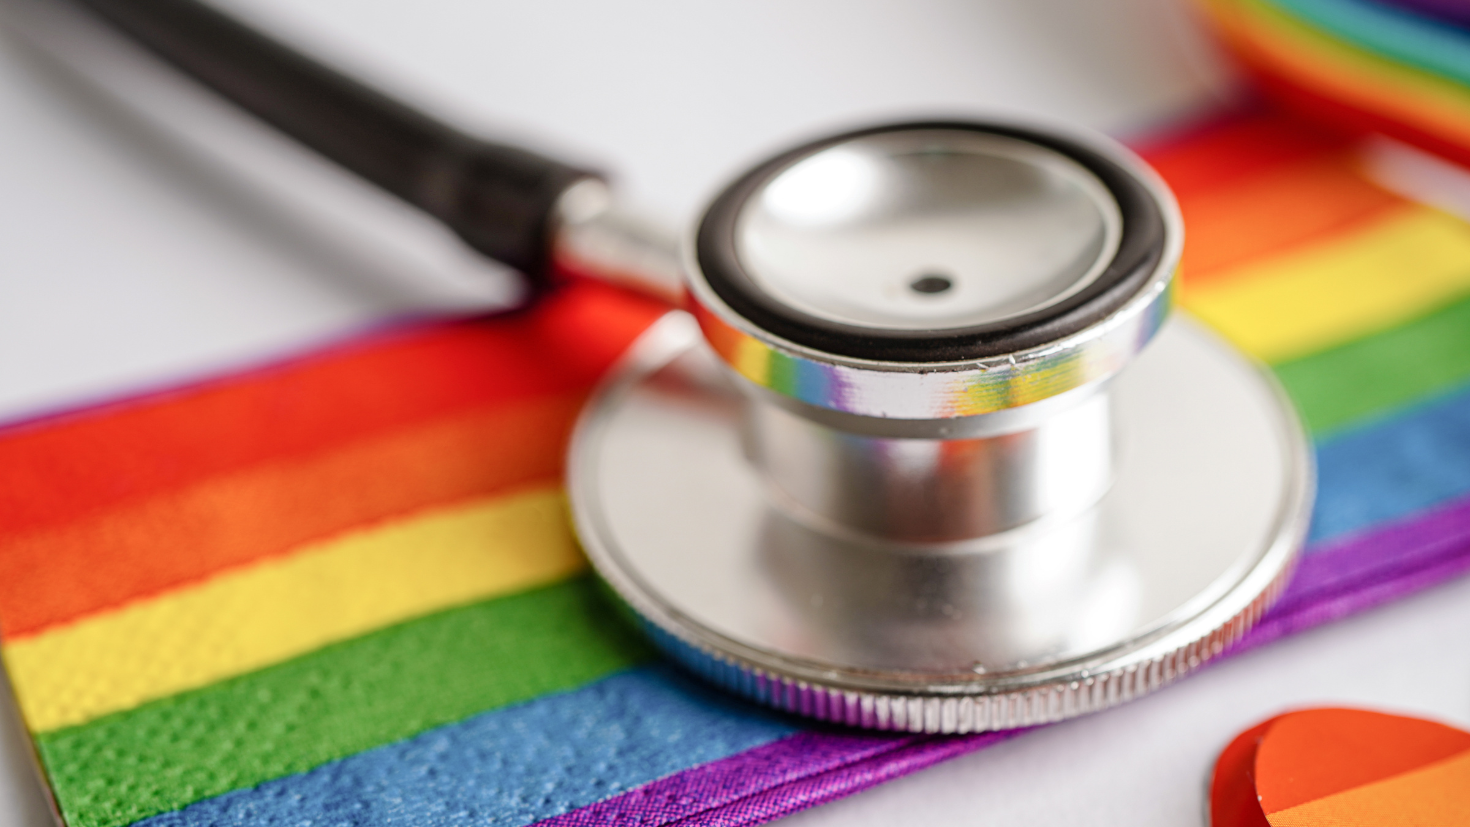 LGBTQ+ Health